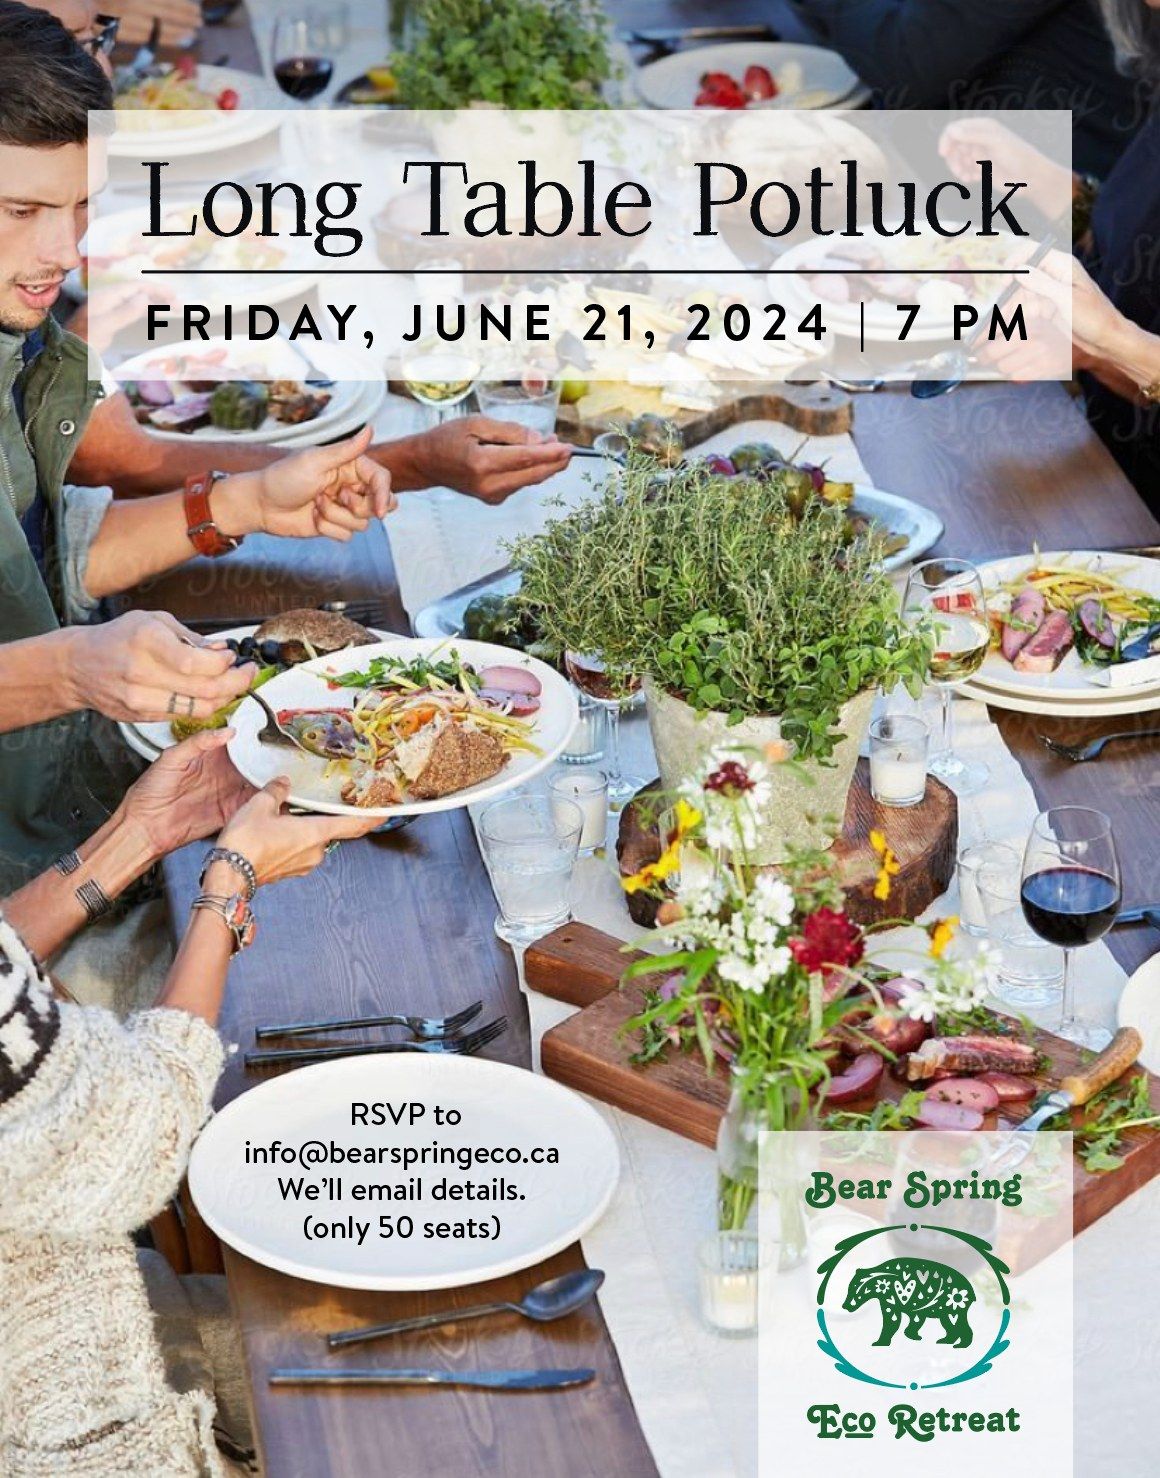 Long Table Potluck